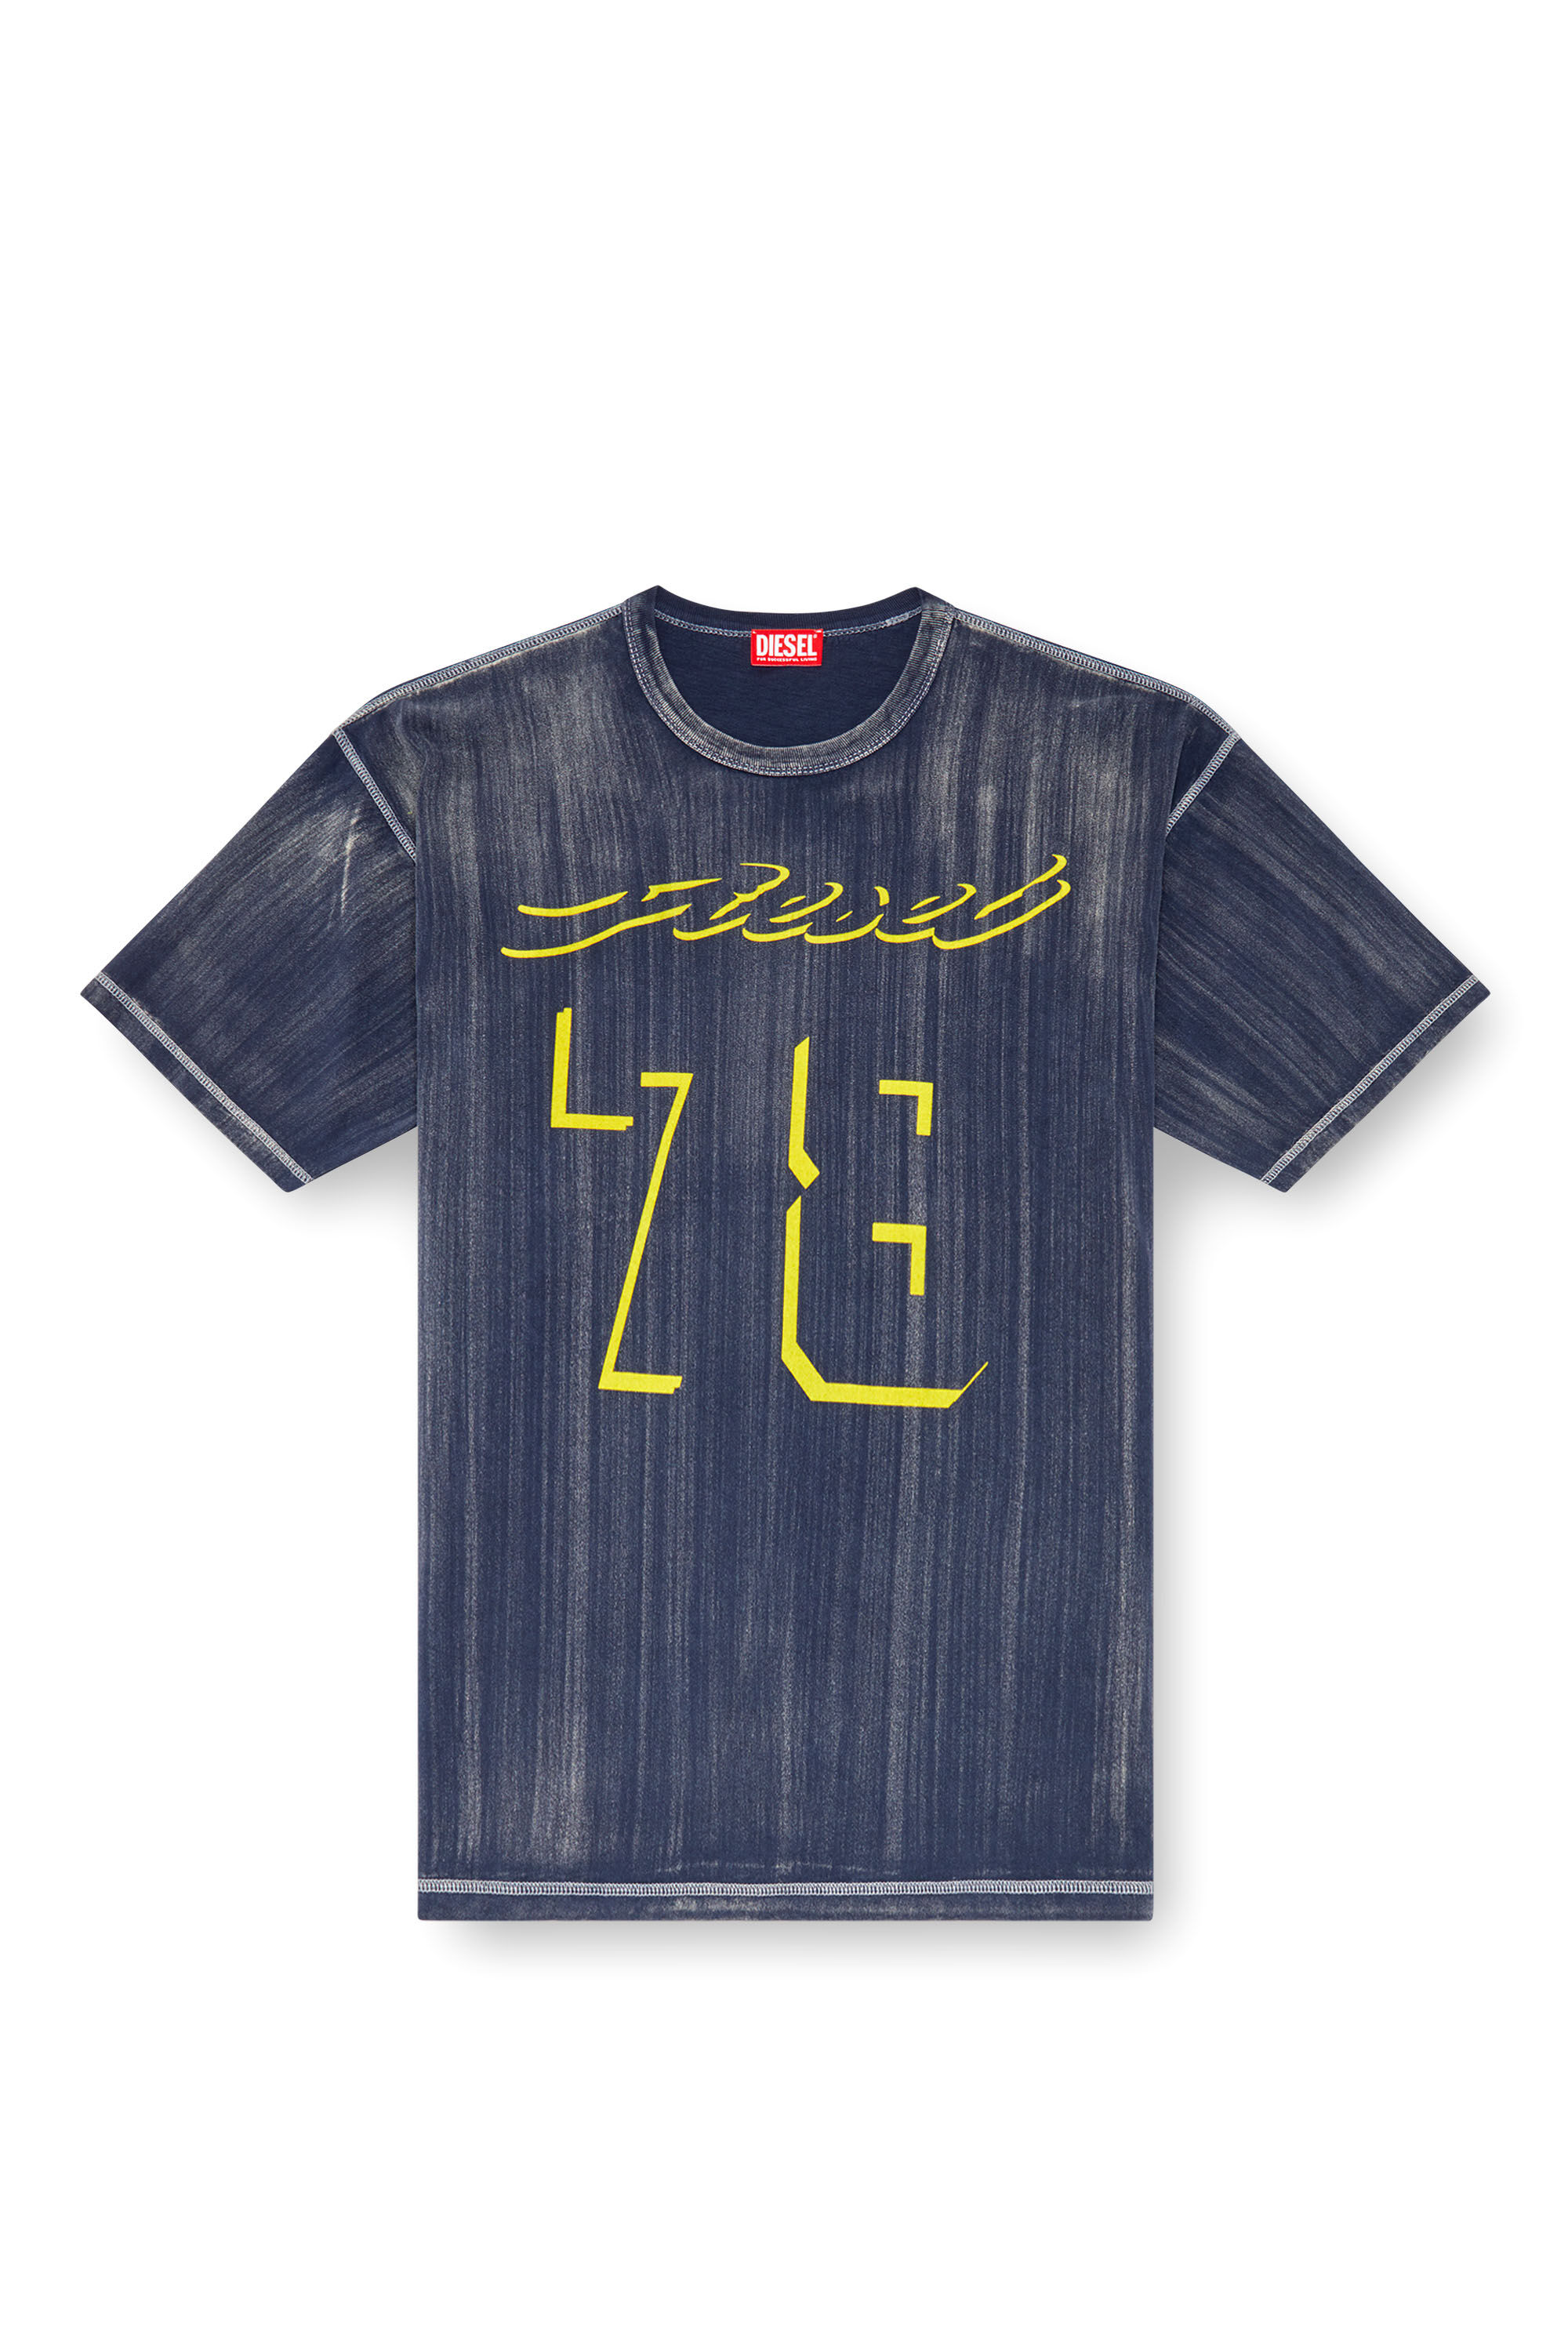 Diesel - T-BOXT-Q2, Homme T-shirt traité avec logo floqué in Bleu - Image 2